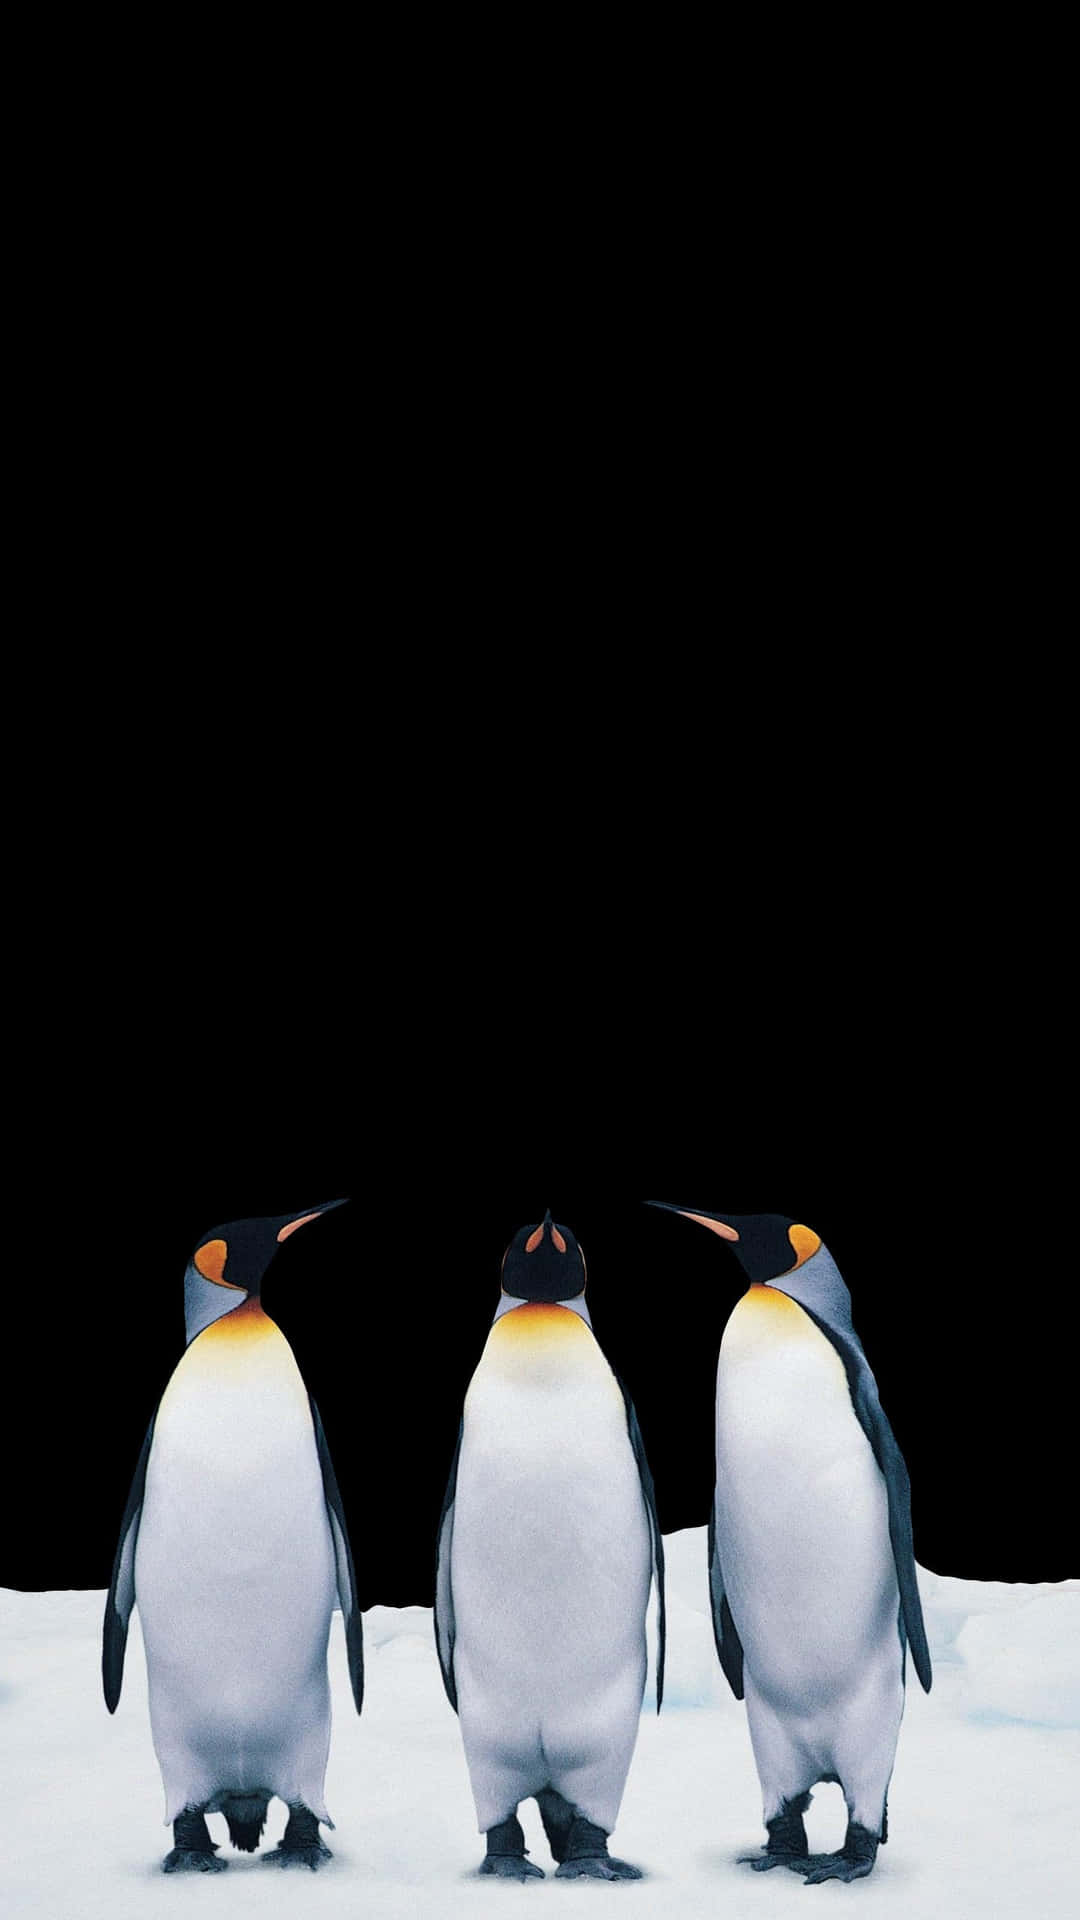 Fondode Pantalla Amoled De Pingüinos Para Pixel 3xl.